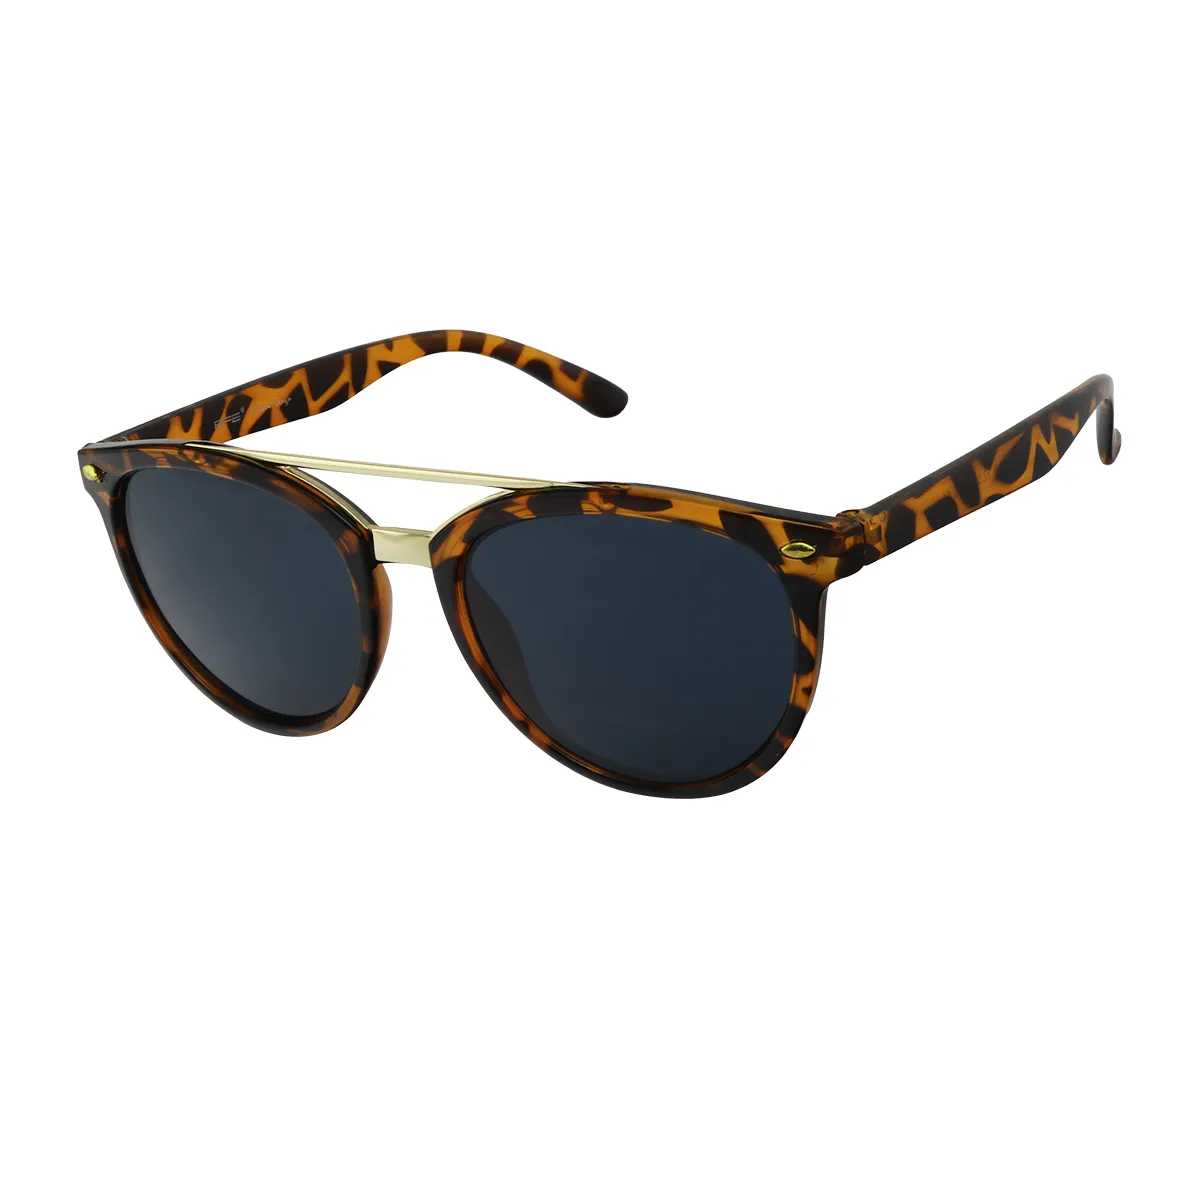 Rhode - Oval Tortoiseshell Sunglasses for Women